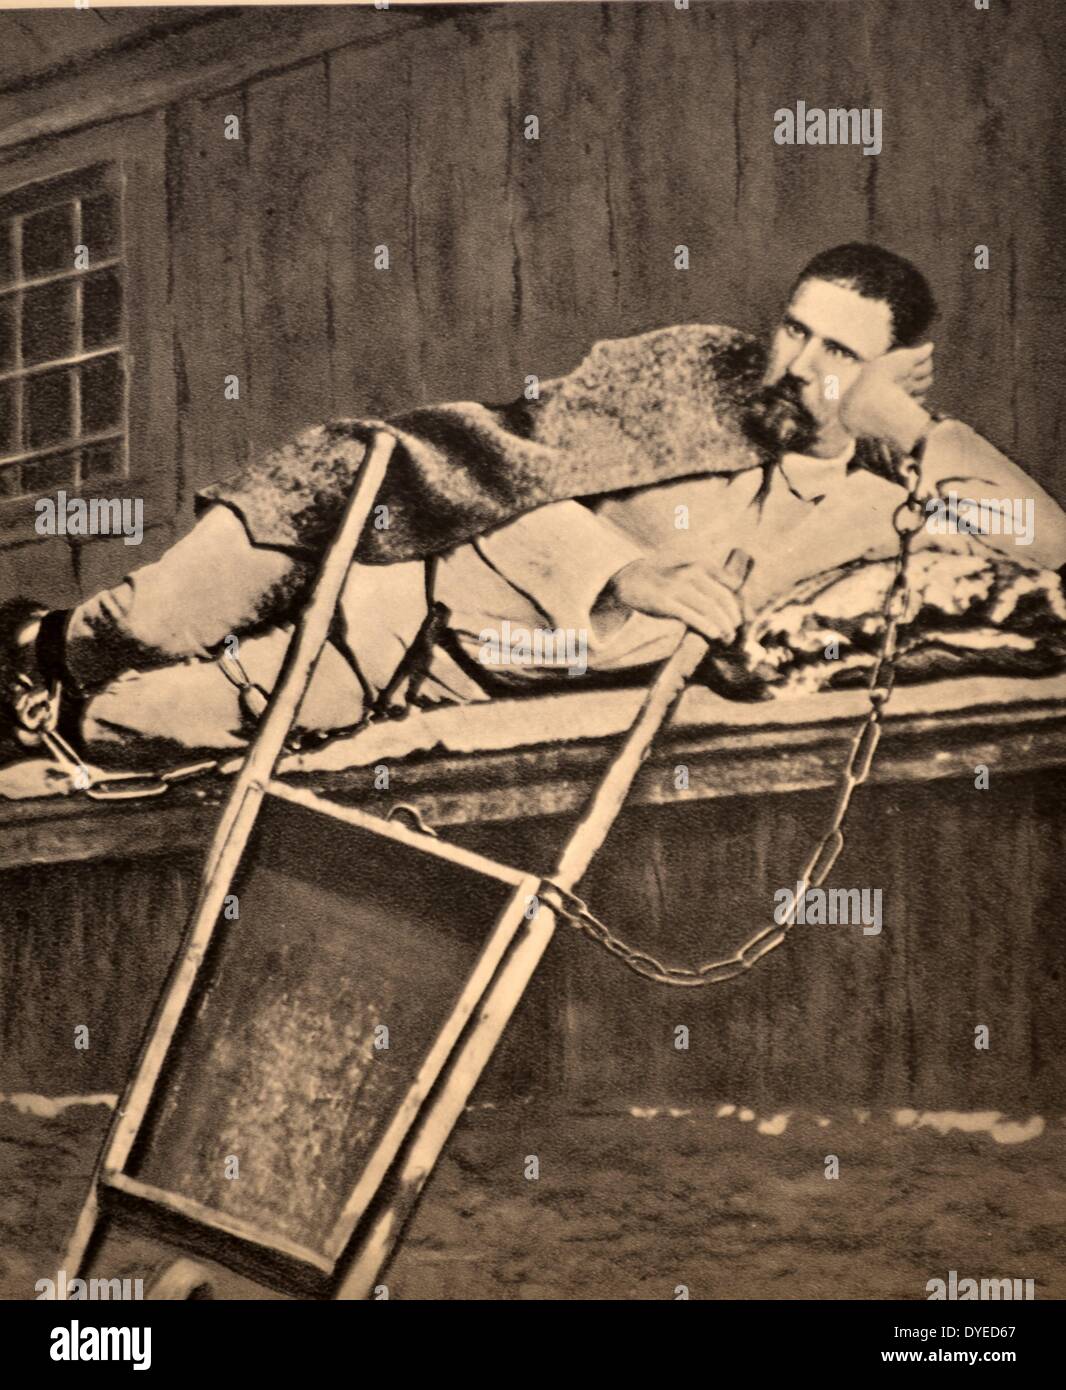 Una fotografia di un prigioniero maschio in appoggio mentre incatenato ad una carriola. Datata 1908. Foto Stock